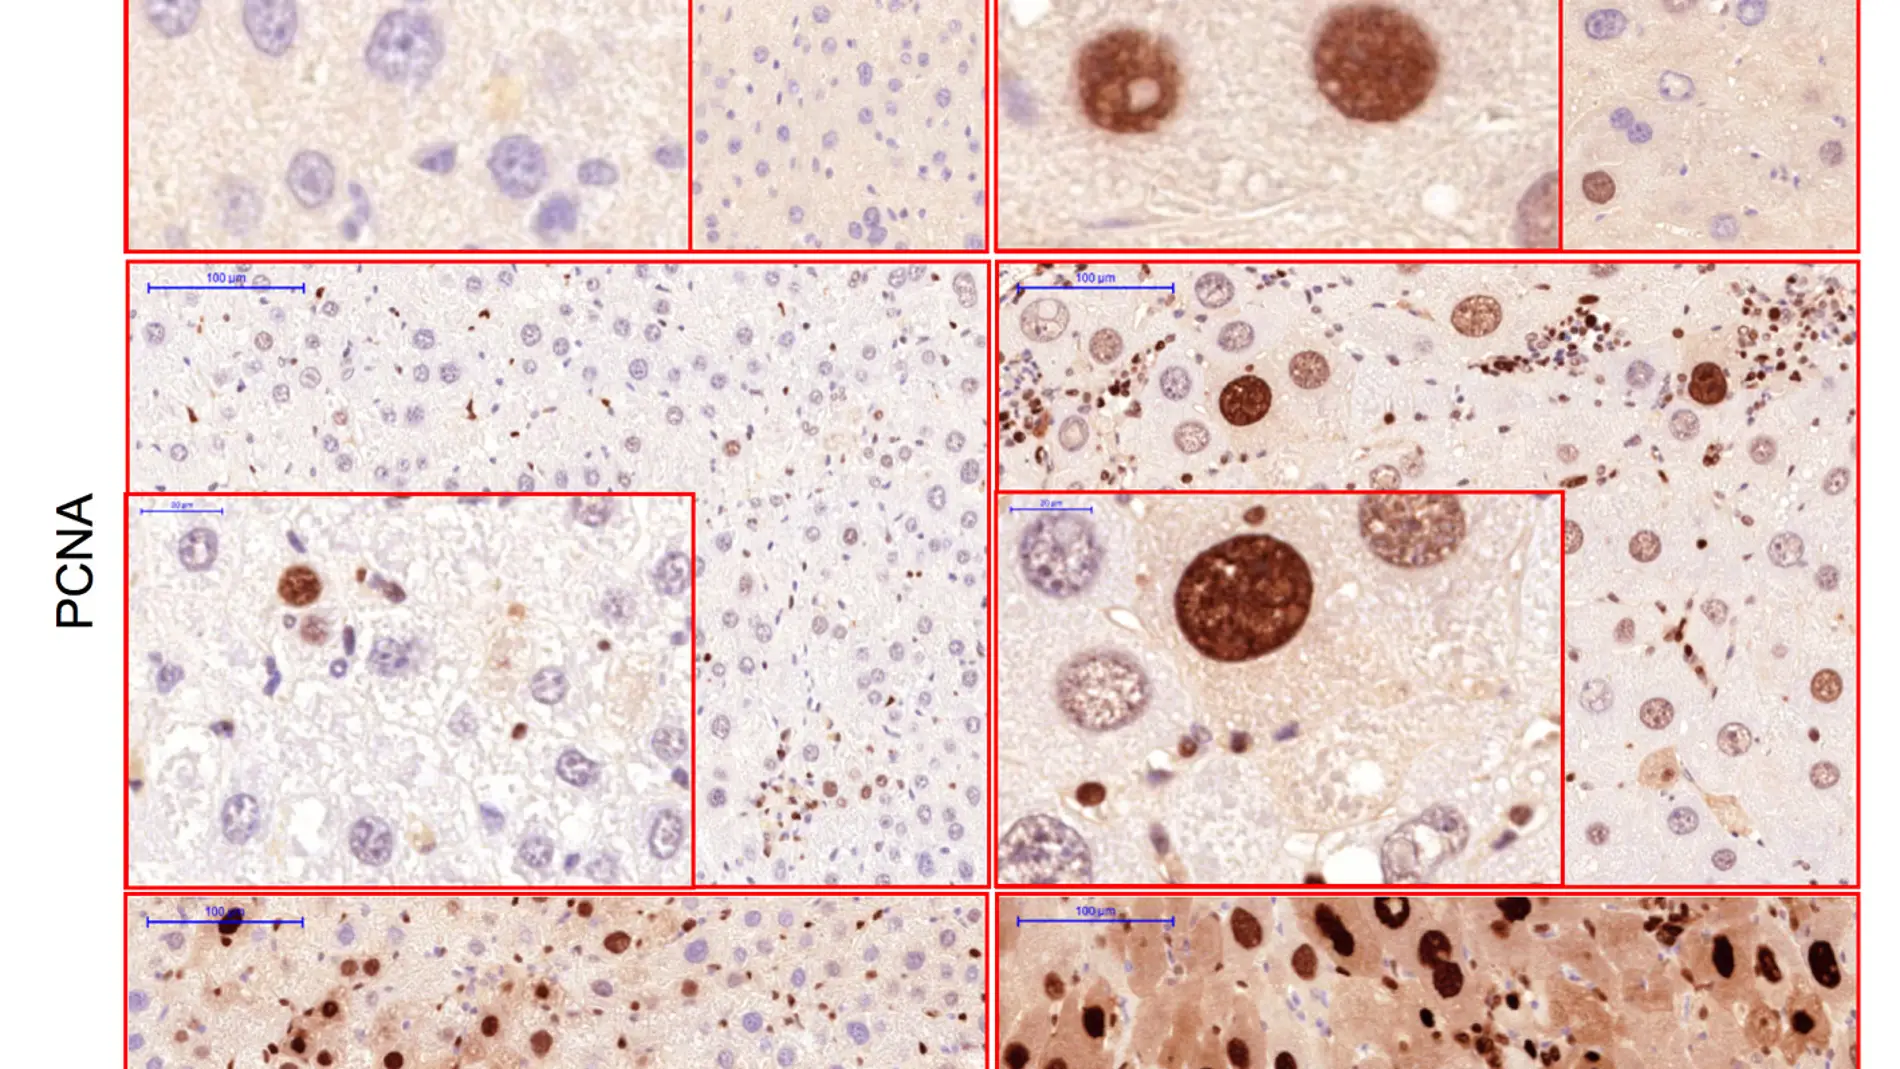 imagen CNIO - células hepáticas